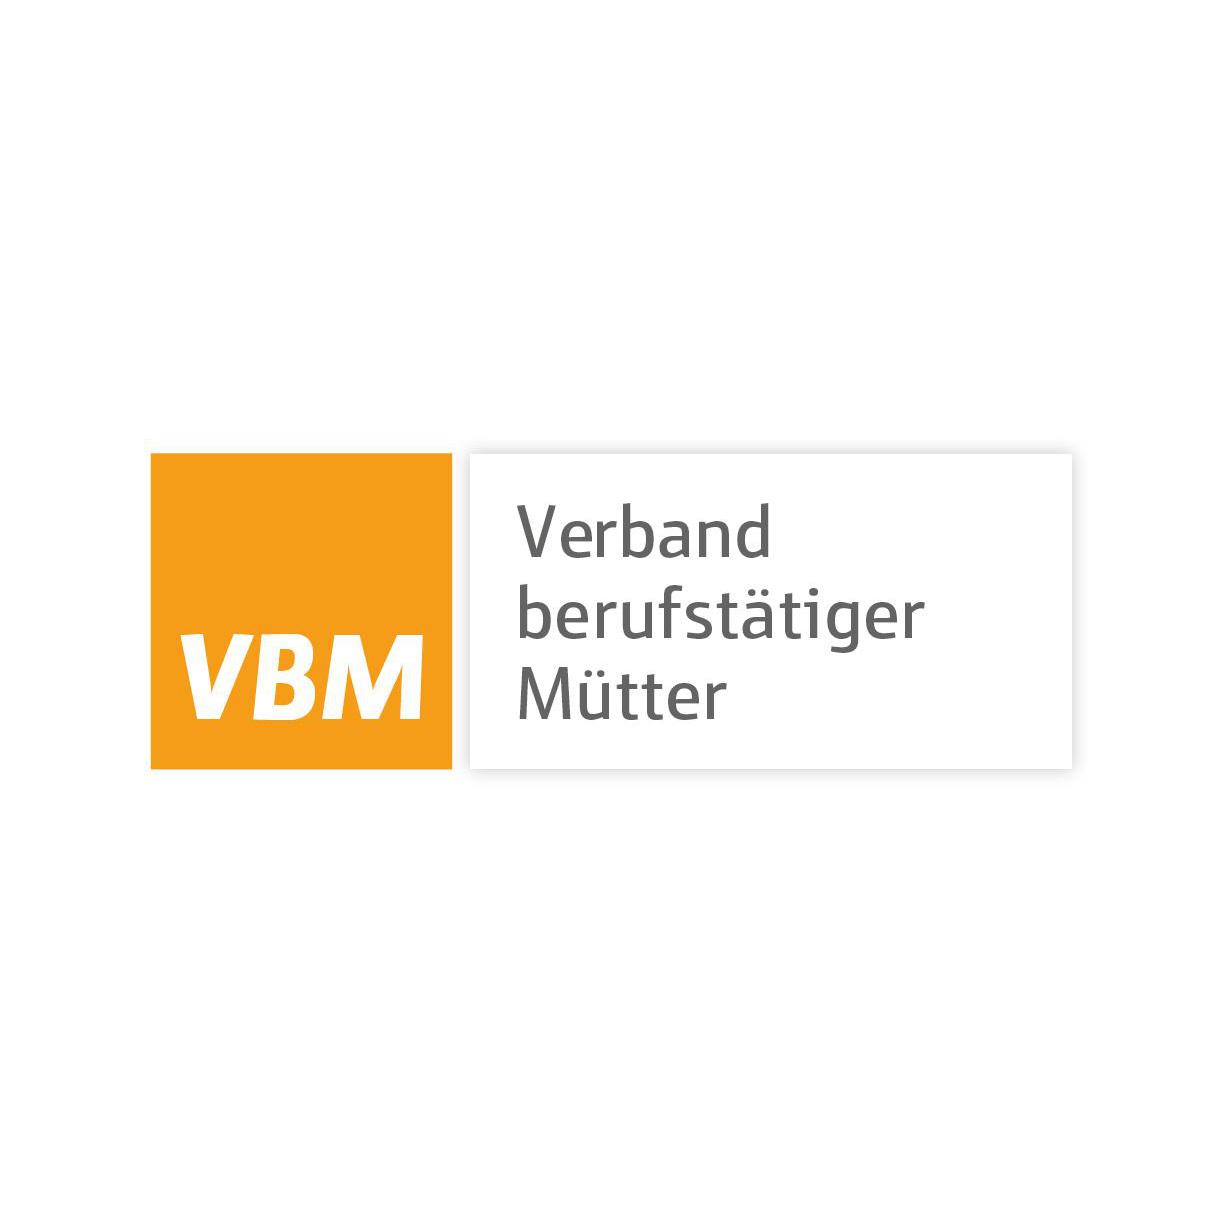 Verband berufstätiger Mütter e. V. in Köln - Logo